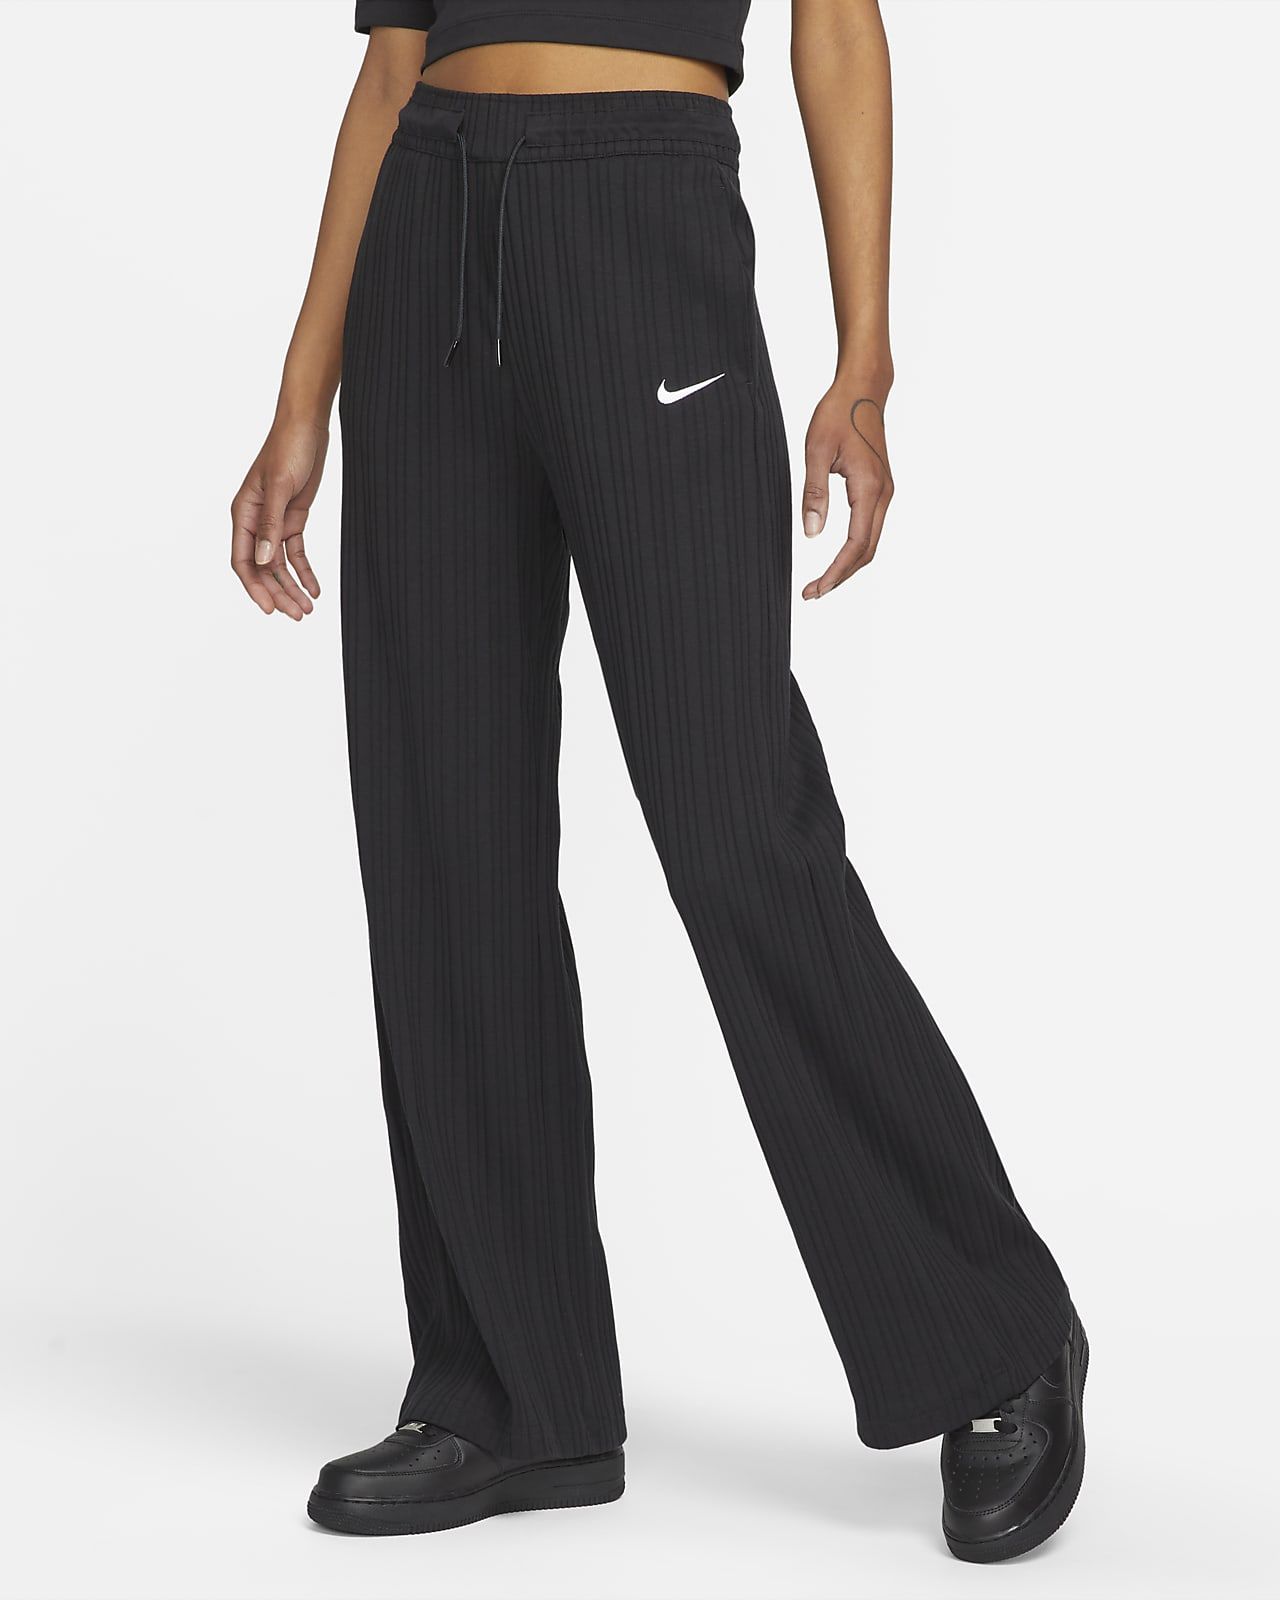 Nike Sportswear Women's Ribbed Jersey Wide Leg Pants. Nike.com | Nike (US)